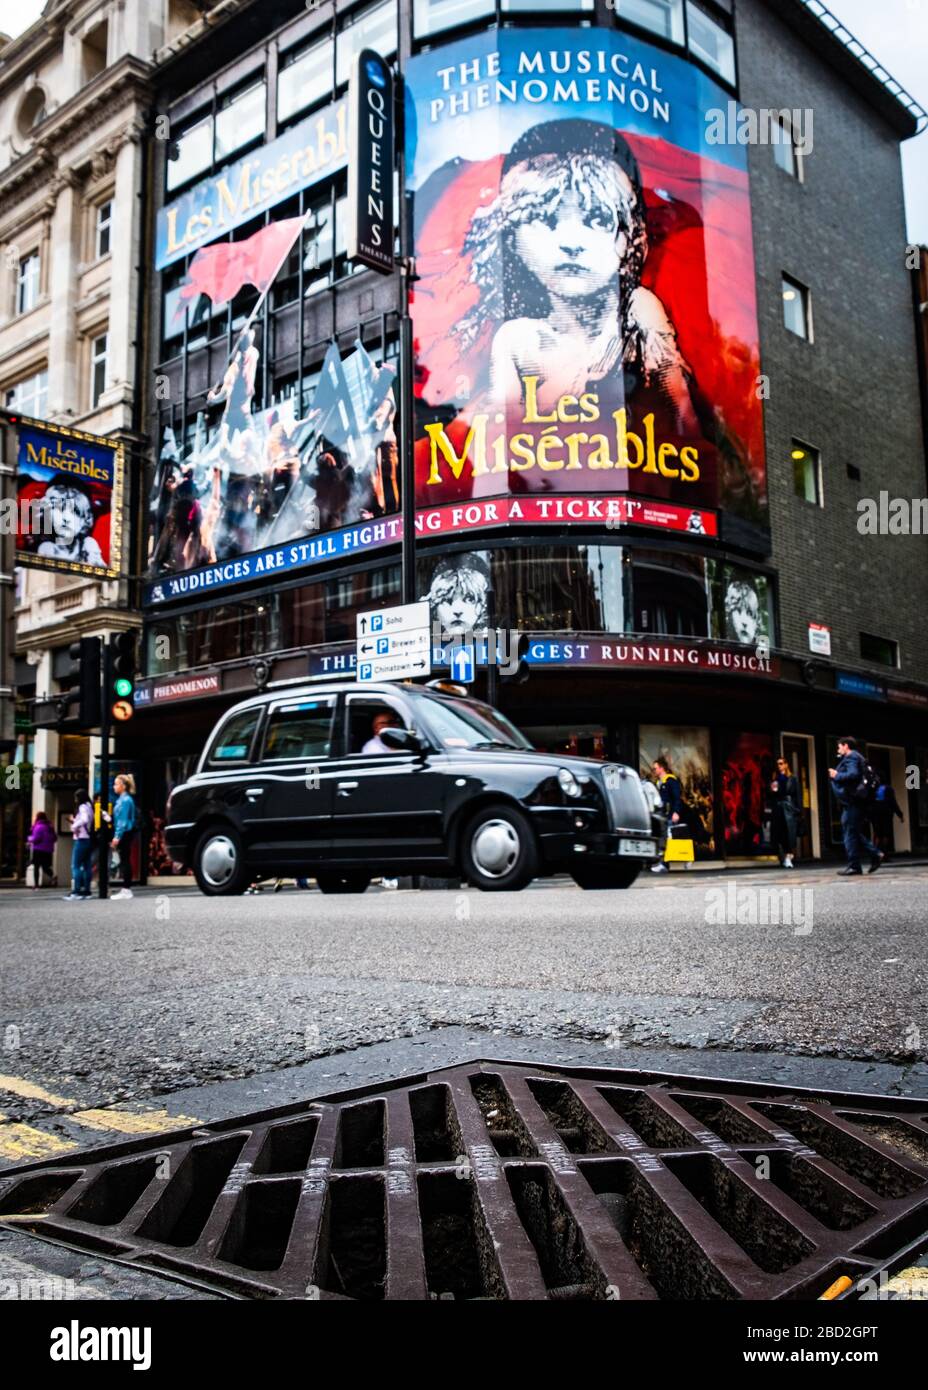 LONDRES- Teatro Les Miserables, un espectáculo de larga duración mundialmente famoso en el West End de Londres Foto de stock